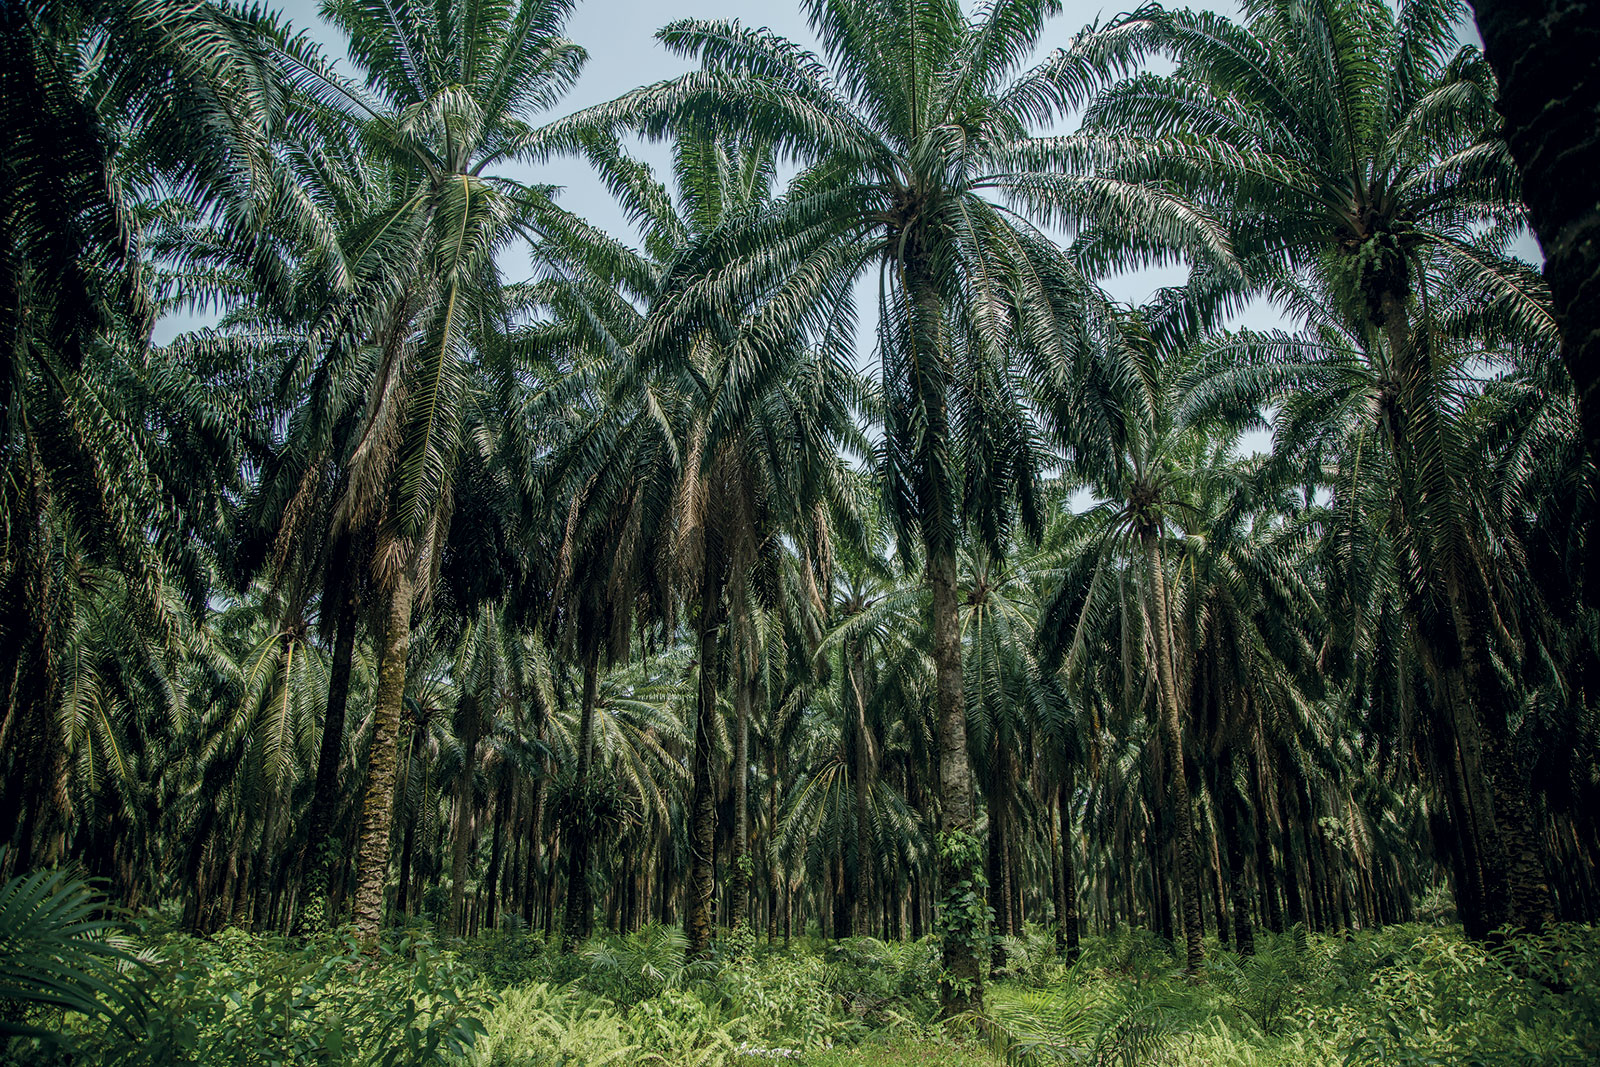 Monocultivo de palma africana en la zona garífuna hondureña. La Ceiba, Atlántida, Honduras, 2023. Fotografía de ©Heriberto Paredes. Cortesía del artista